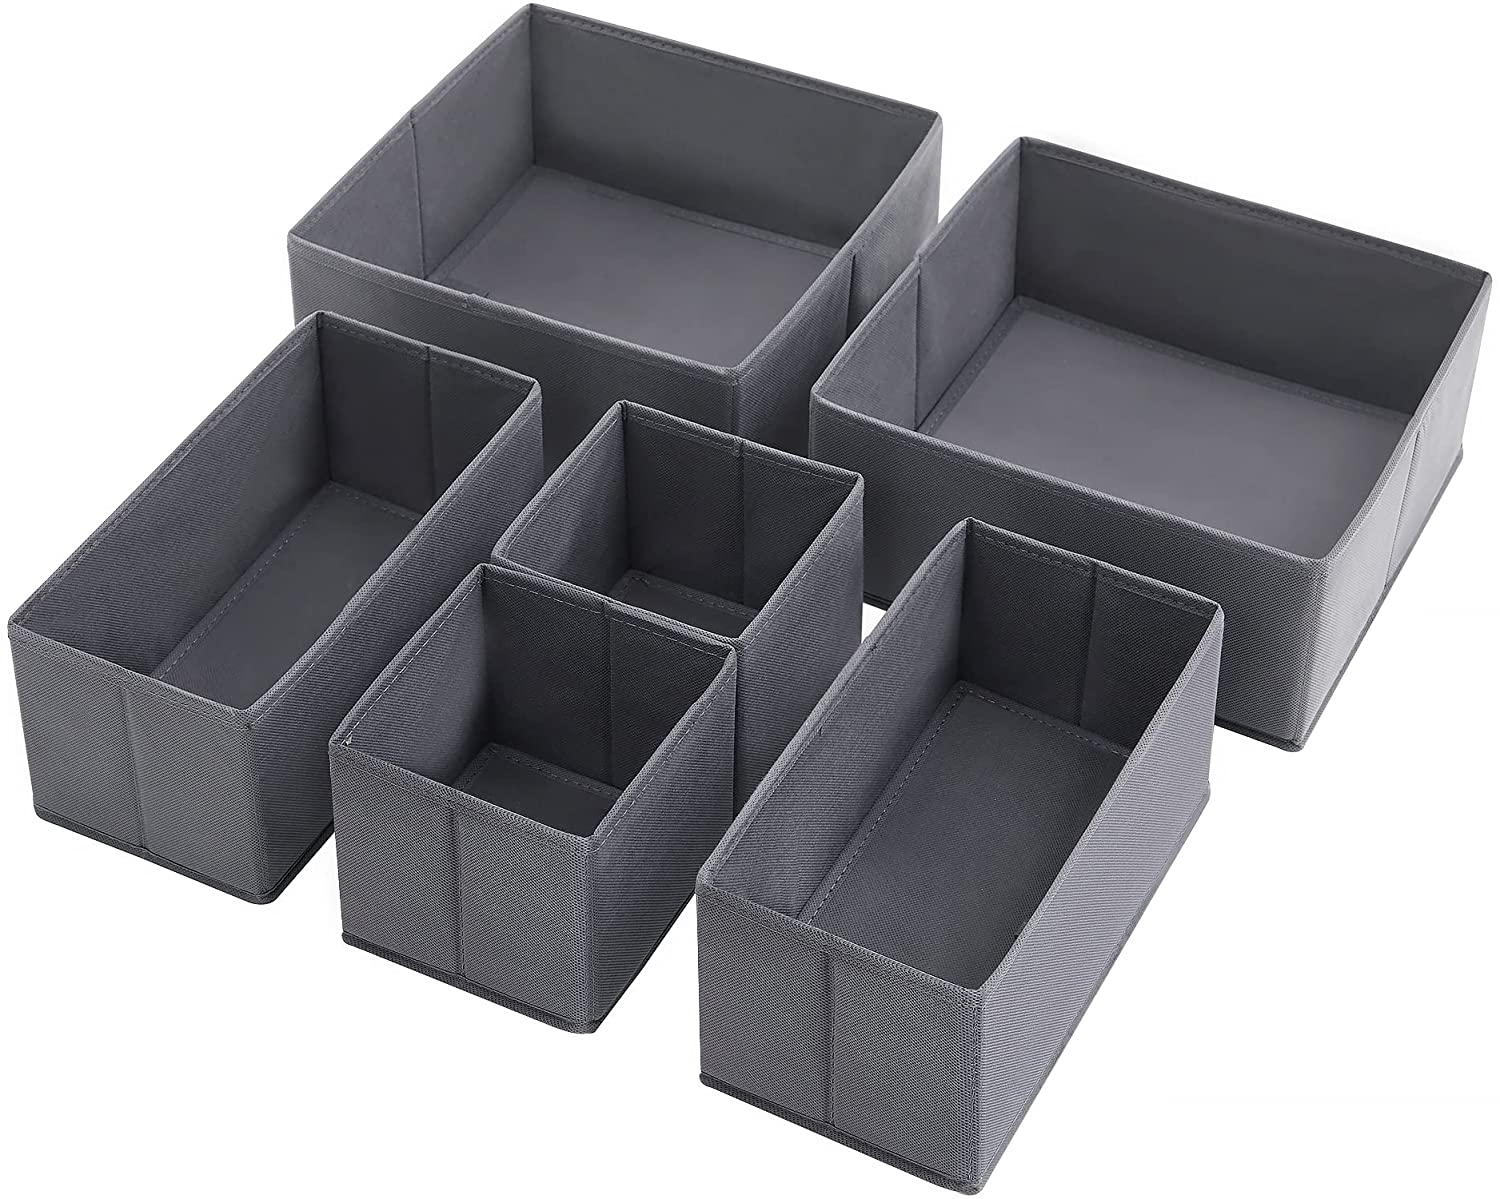 Billede af Kasser i forskellige størrelser til småopbevaring, grå